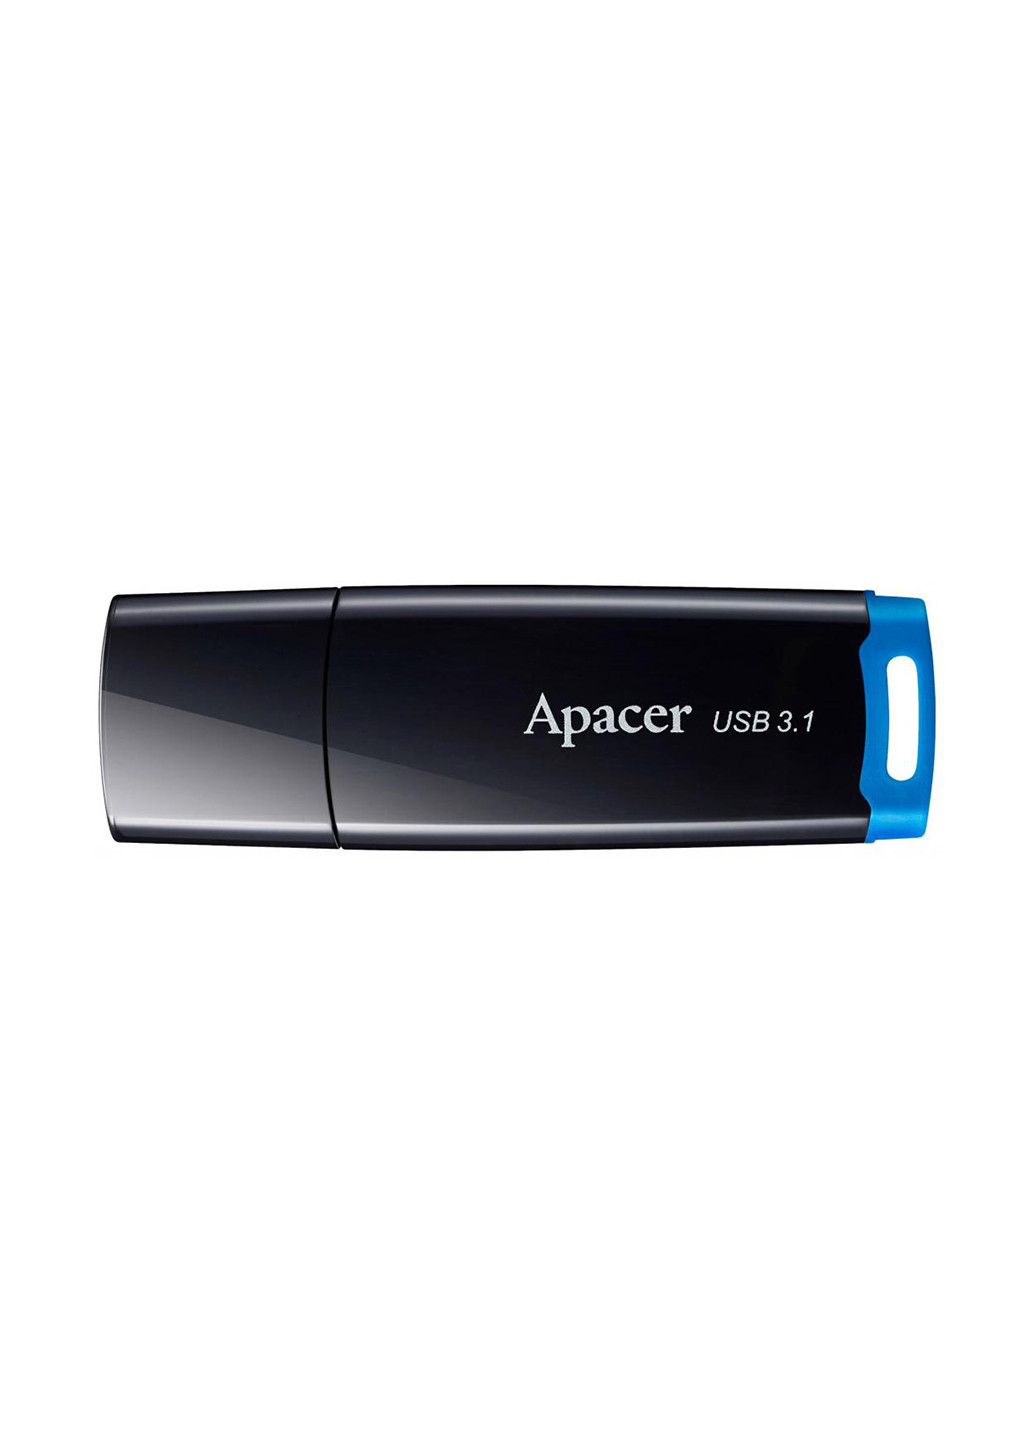 Флеш память USB AH359 16GB USB 3.1 Blue (AP16GAH359U-1) Apacer флеш память usb apacer ah359 16gb usb 3.1 blue (ap16gah359u-1) (135165504)